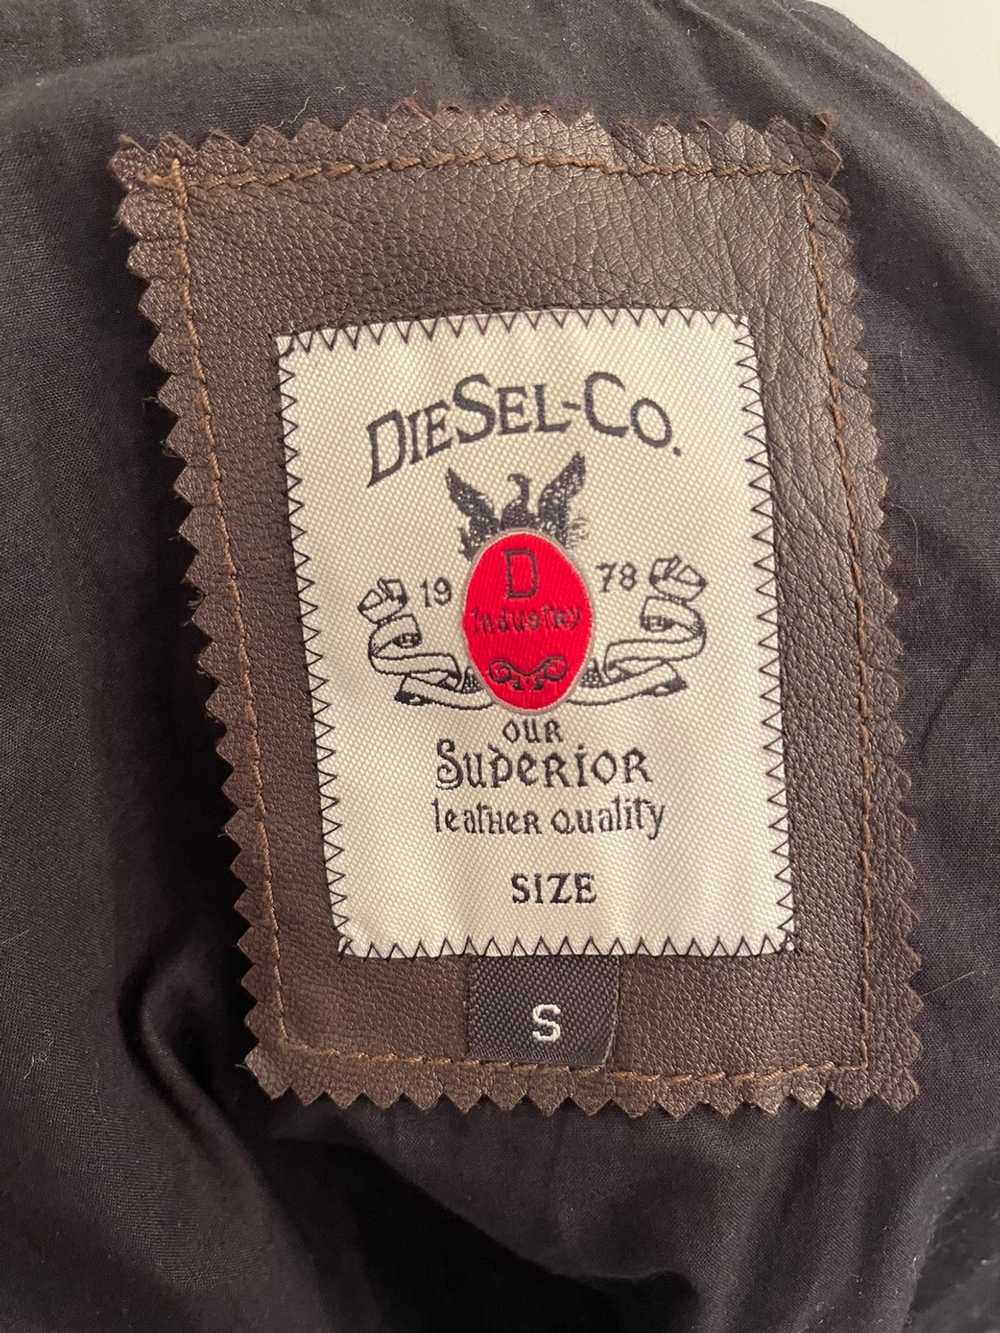 Diesel Diesel Brown Leather Jacket - Gem